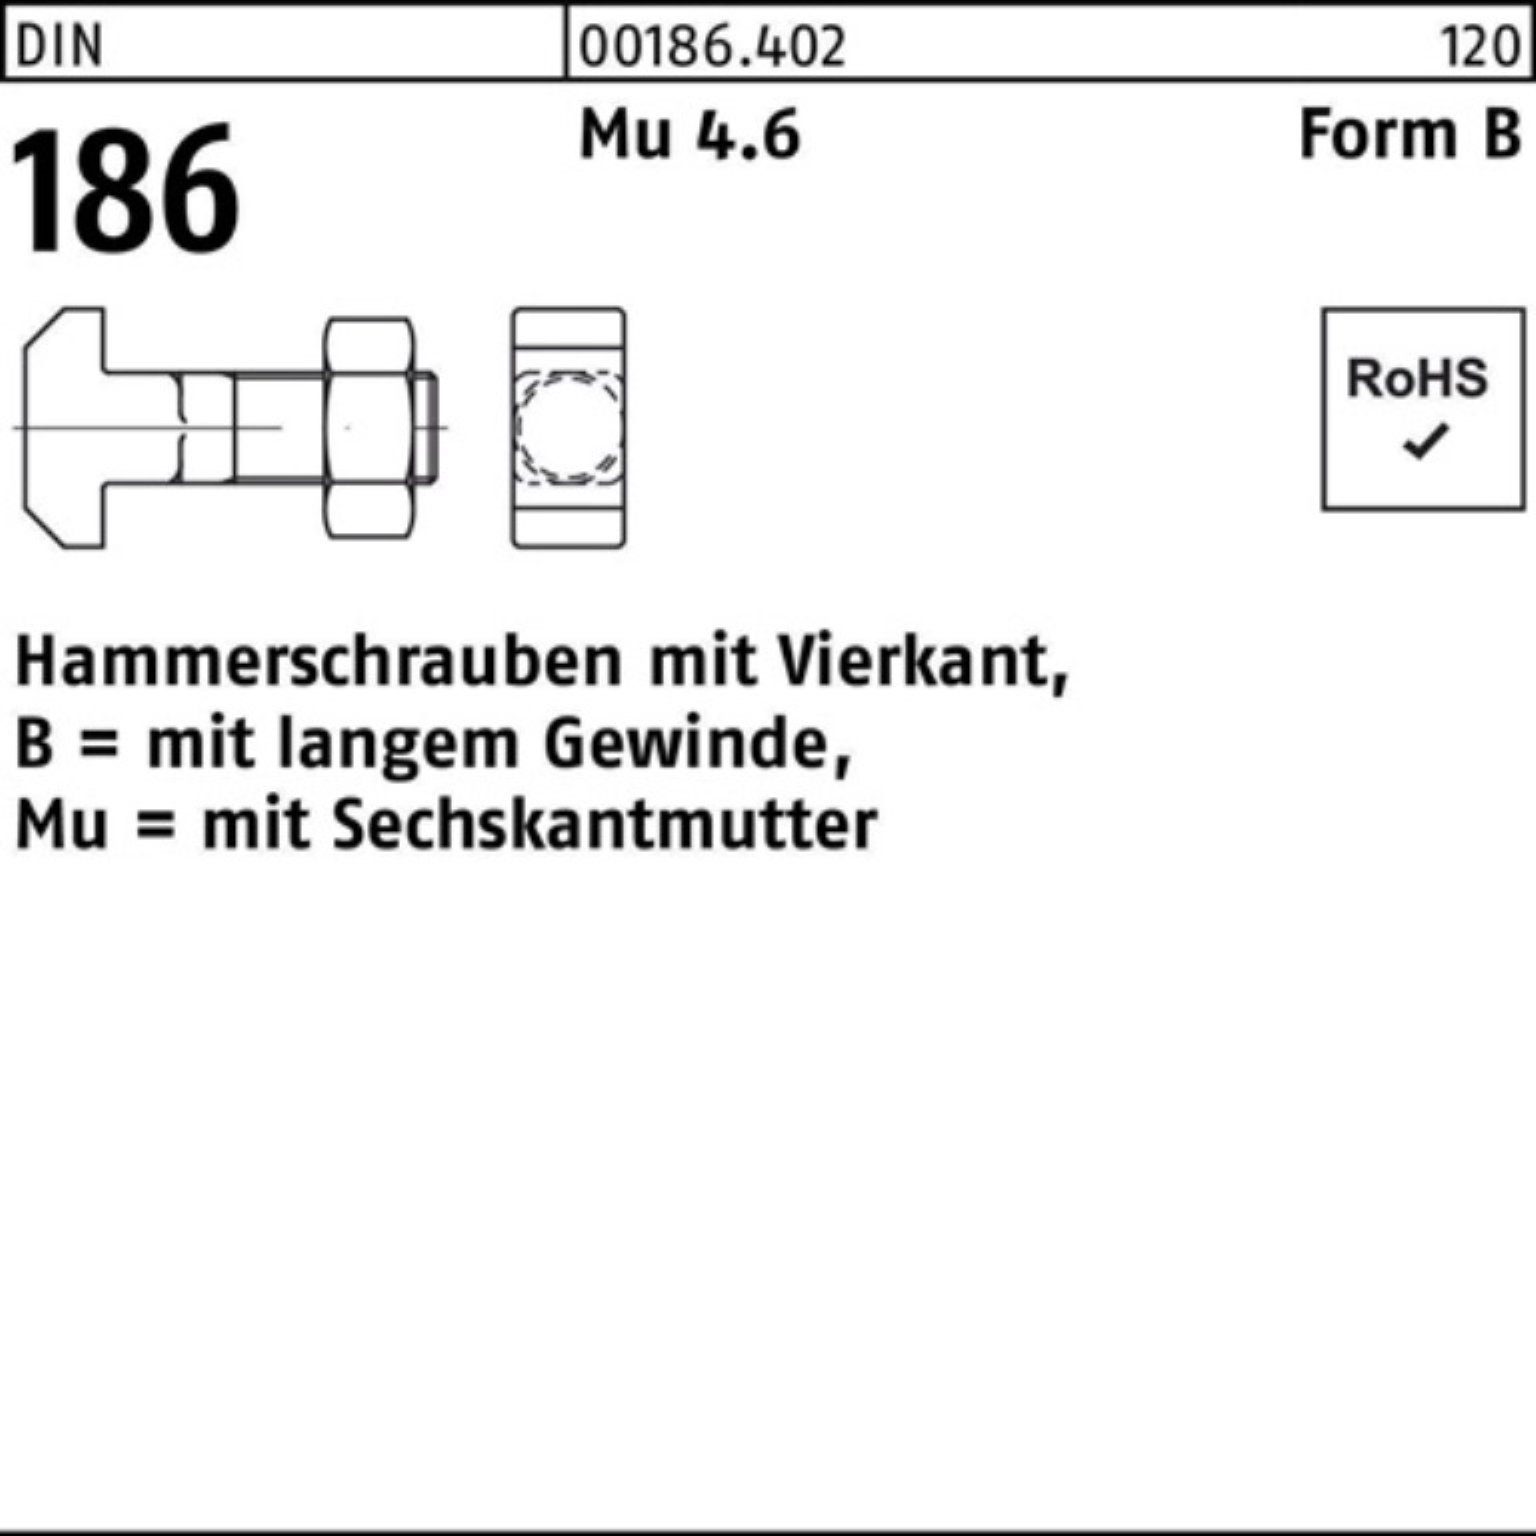 Schraube 120 Vierkant DIN Pack BM Hammerschraube 100er 186 Reyher 6-ktmutter 24x FormB